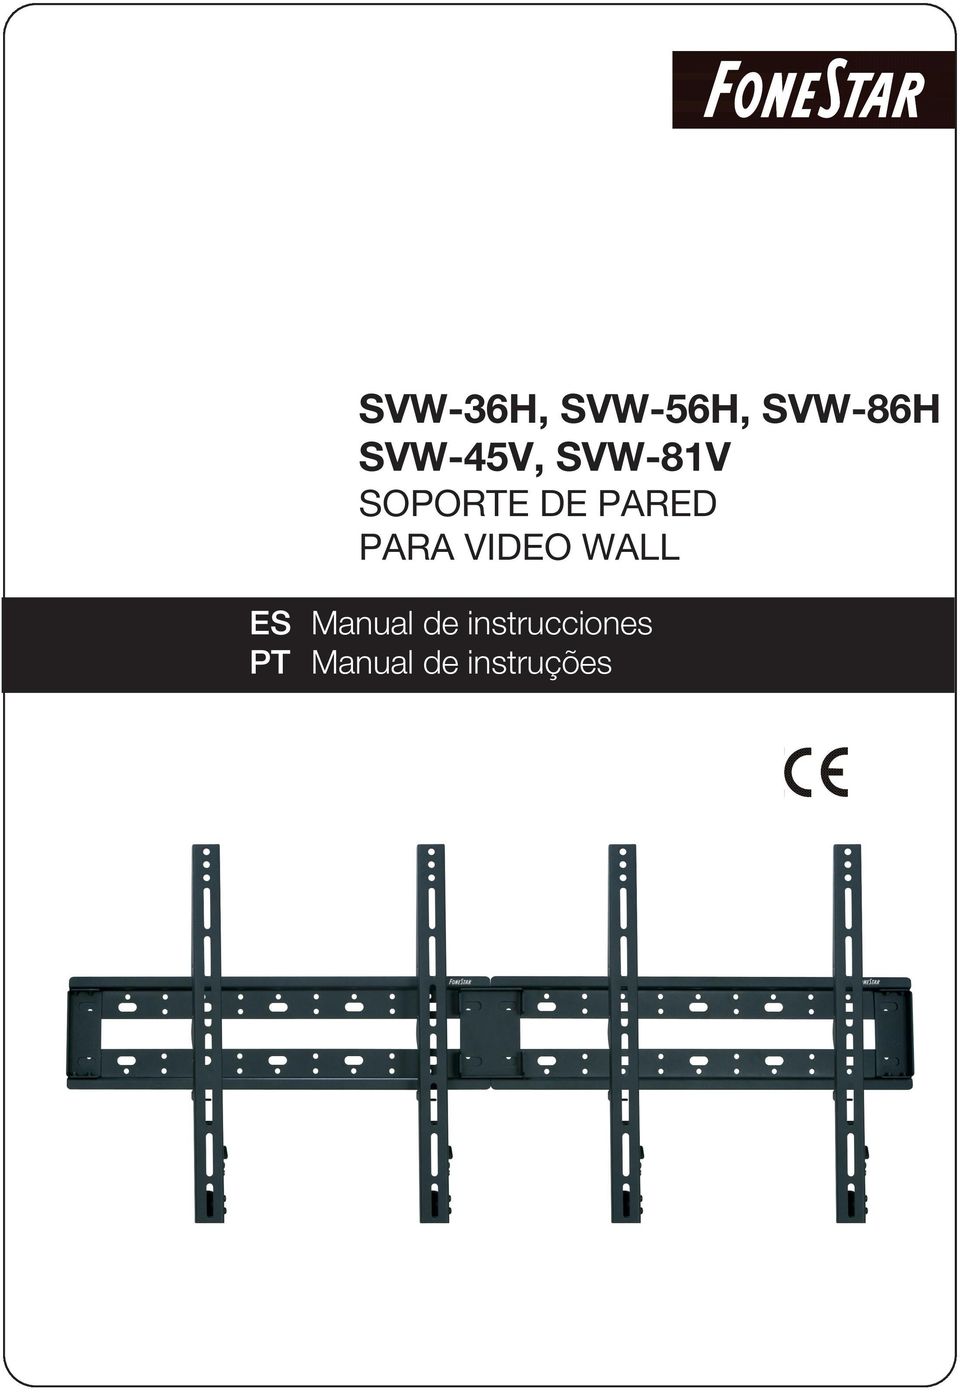 PARED PARA VIDEO WALL ES Manual